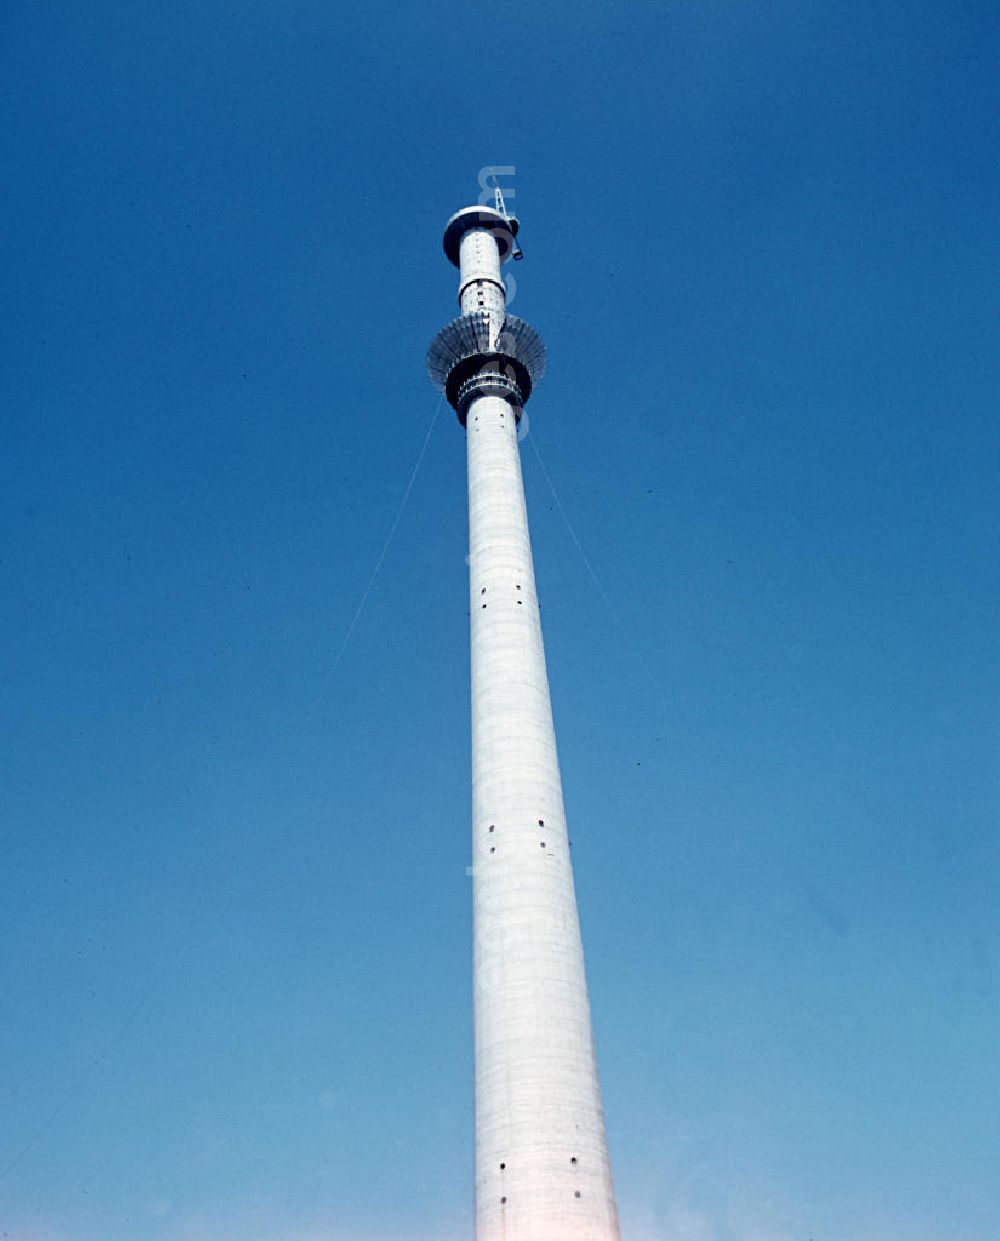 GDR image archive: Berlin - Blick auf den Schaft des im Baum befindlichen Fernsehturm, erste Segmente der Kugel sind schon zusammengesetzt.